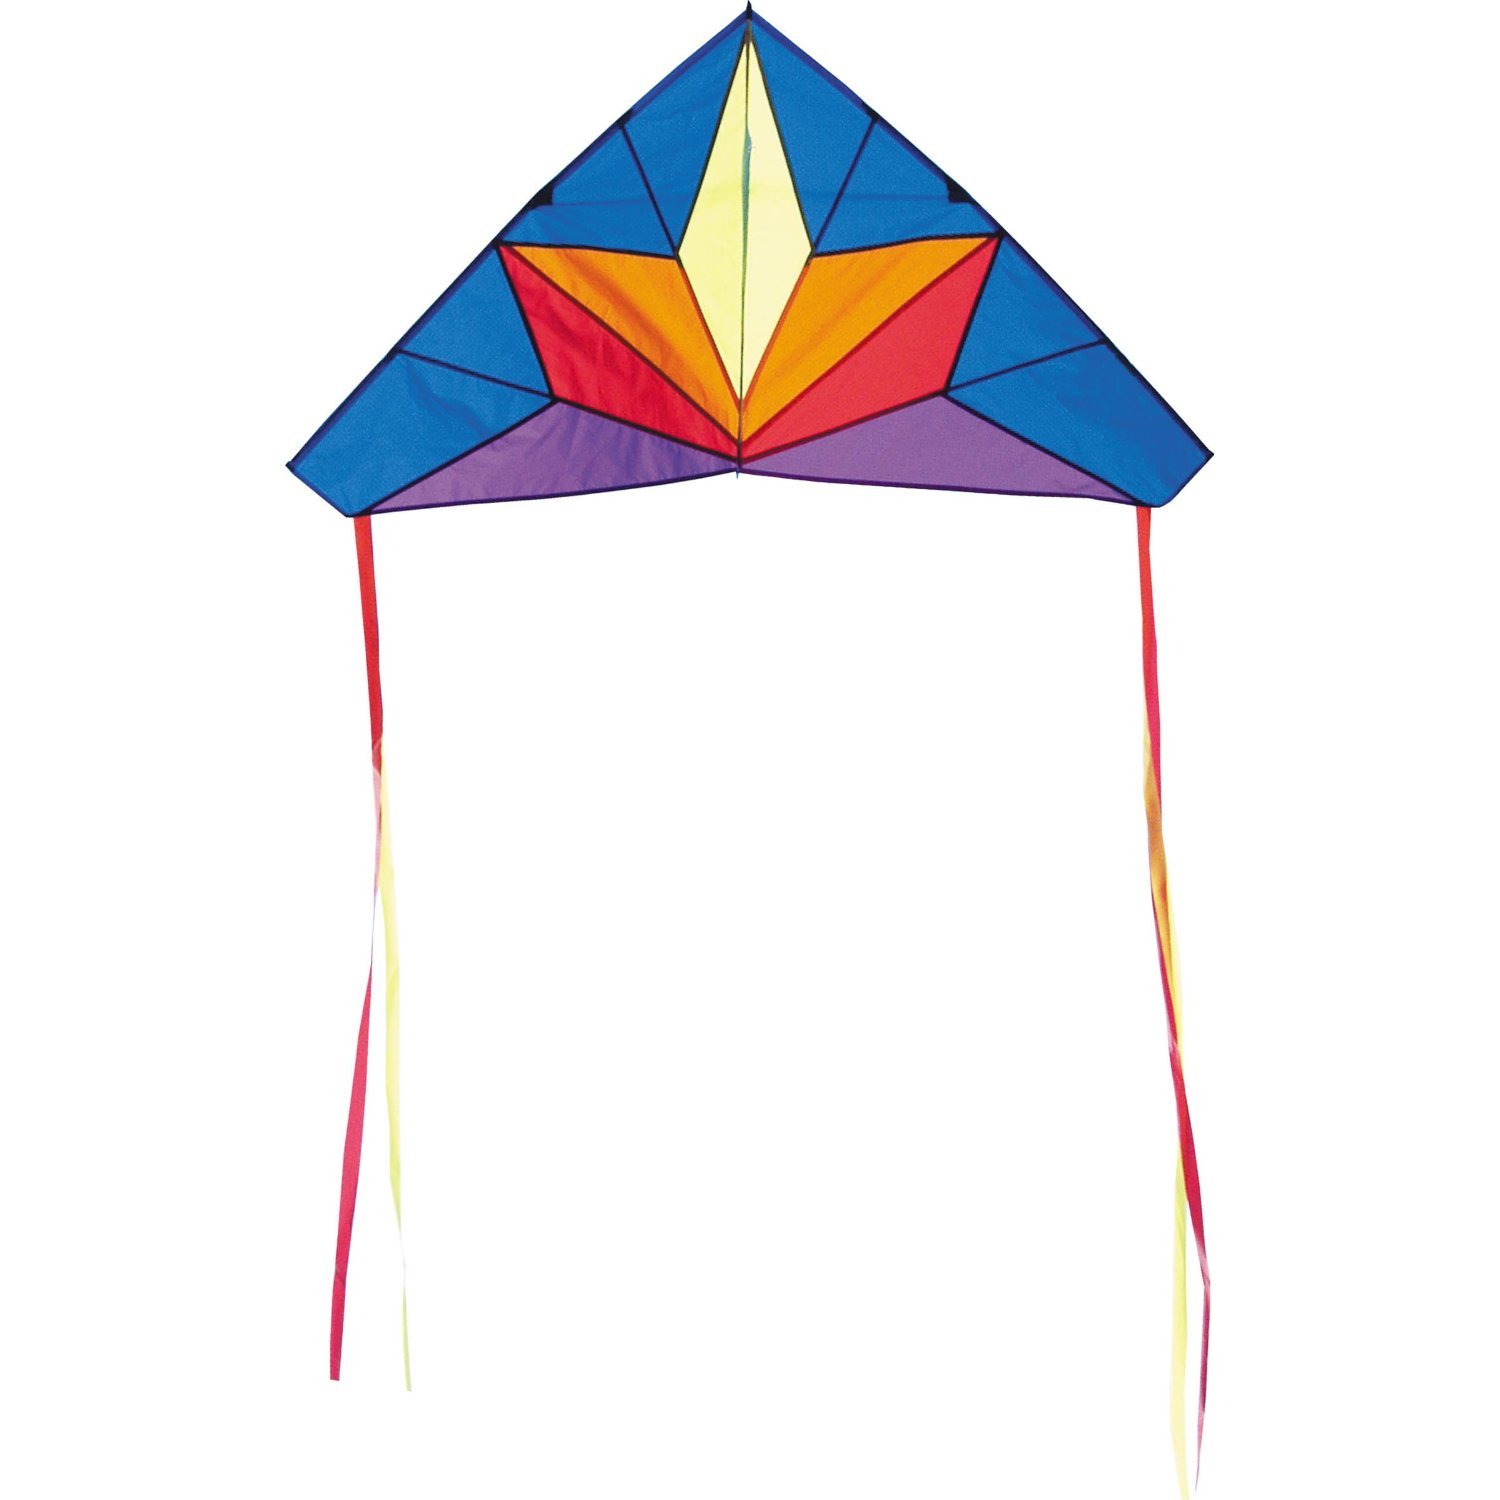 cartoon kite